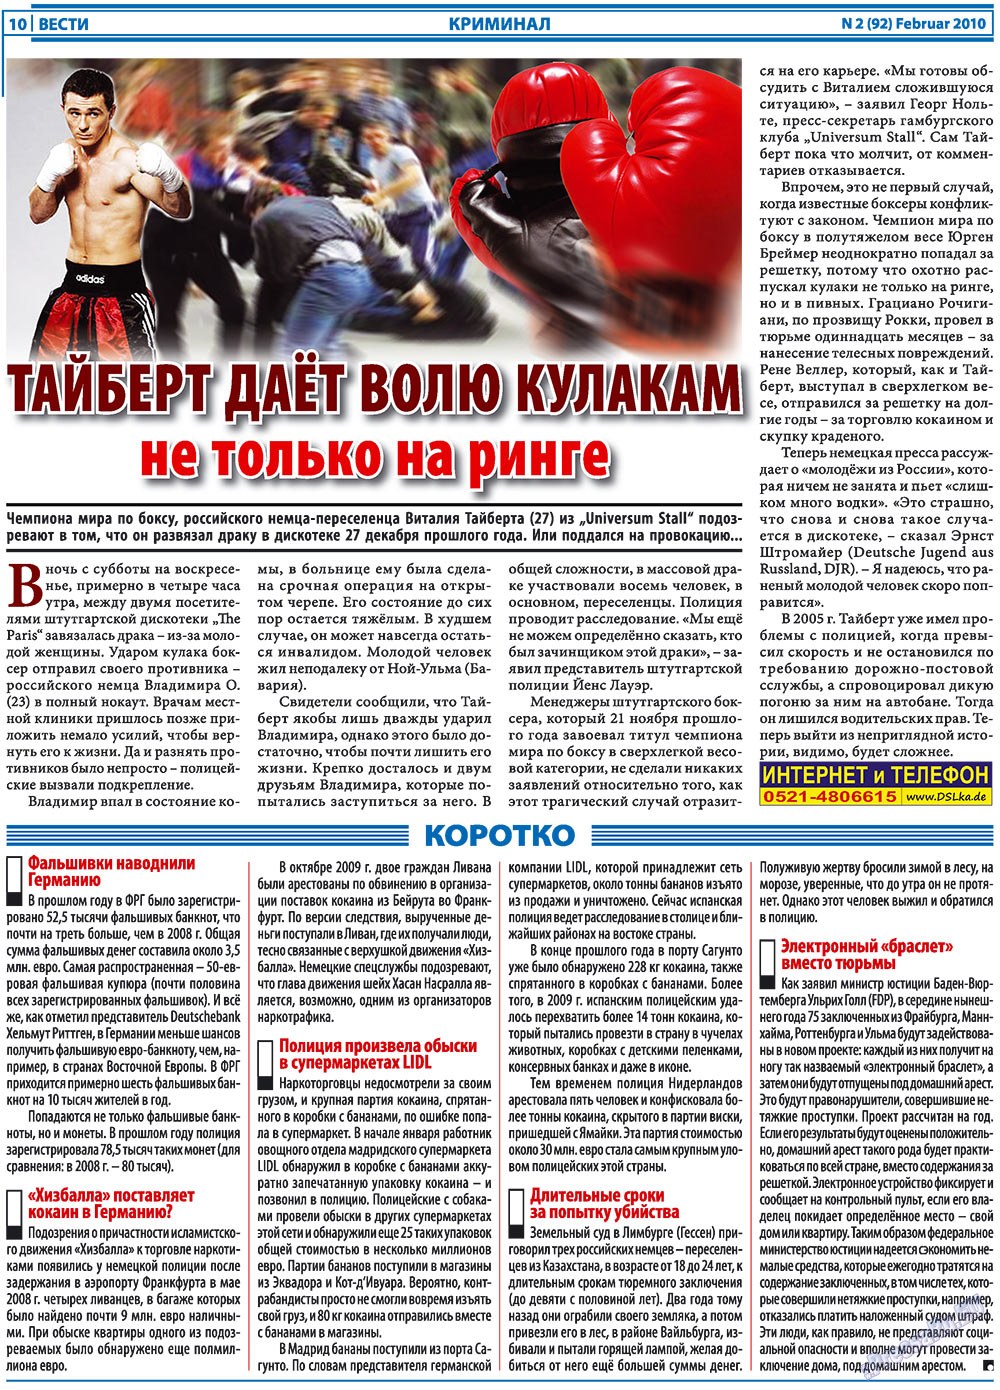 Вести, газета. 2010 №2 стр.10